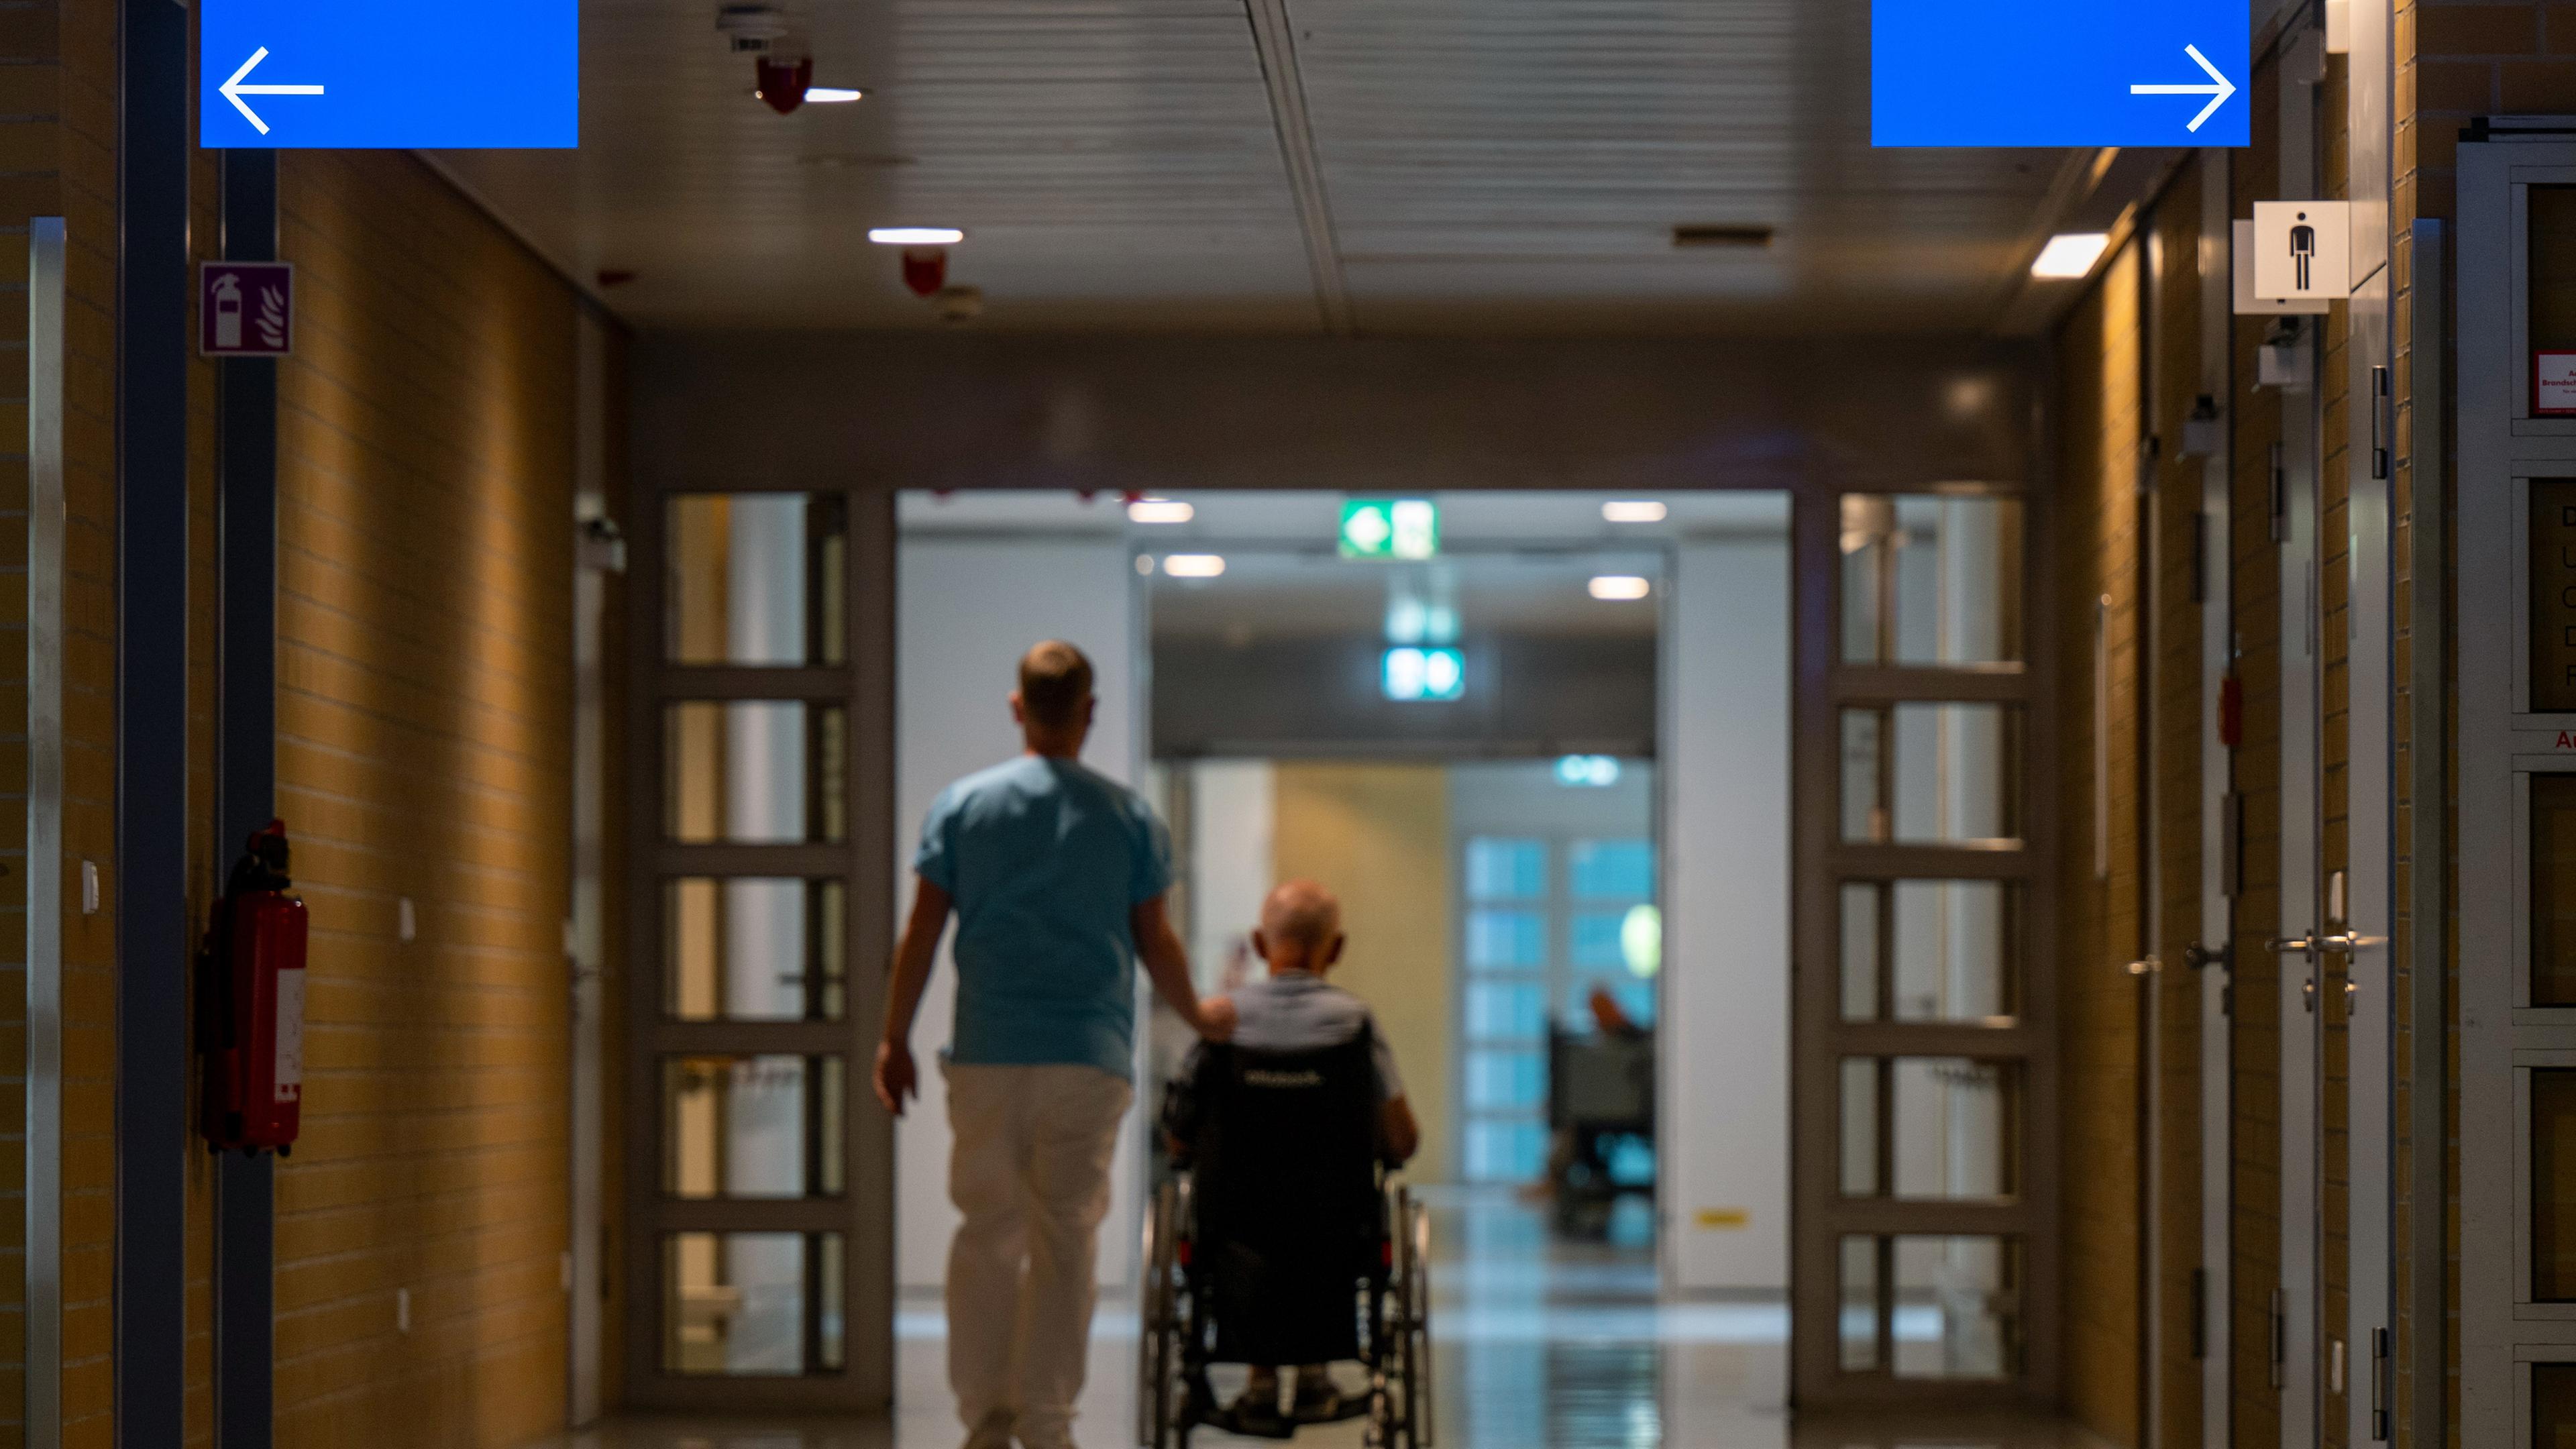 Flur in einem krankenhaus, von hinten sind ein Pfleger und ein Patient im Rollstuhl zu sehen.